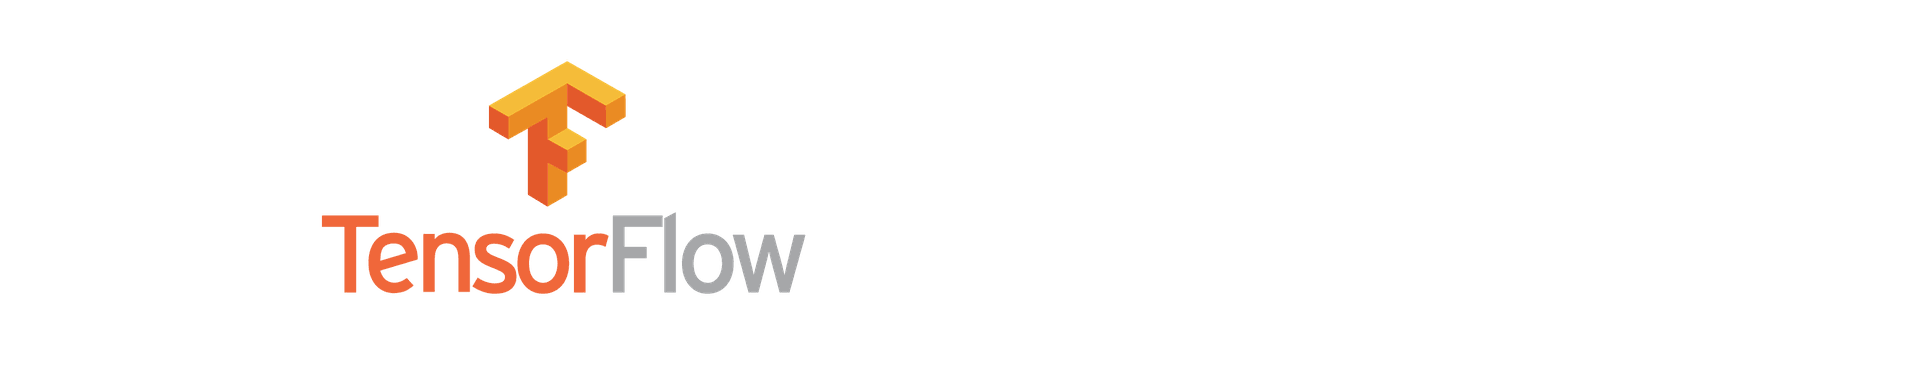 TensorFlow logo transparent